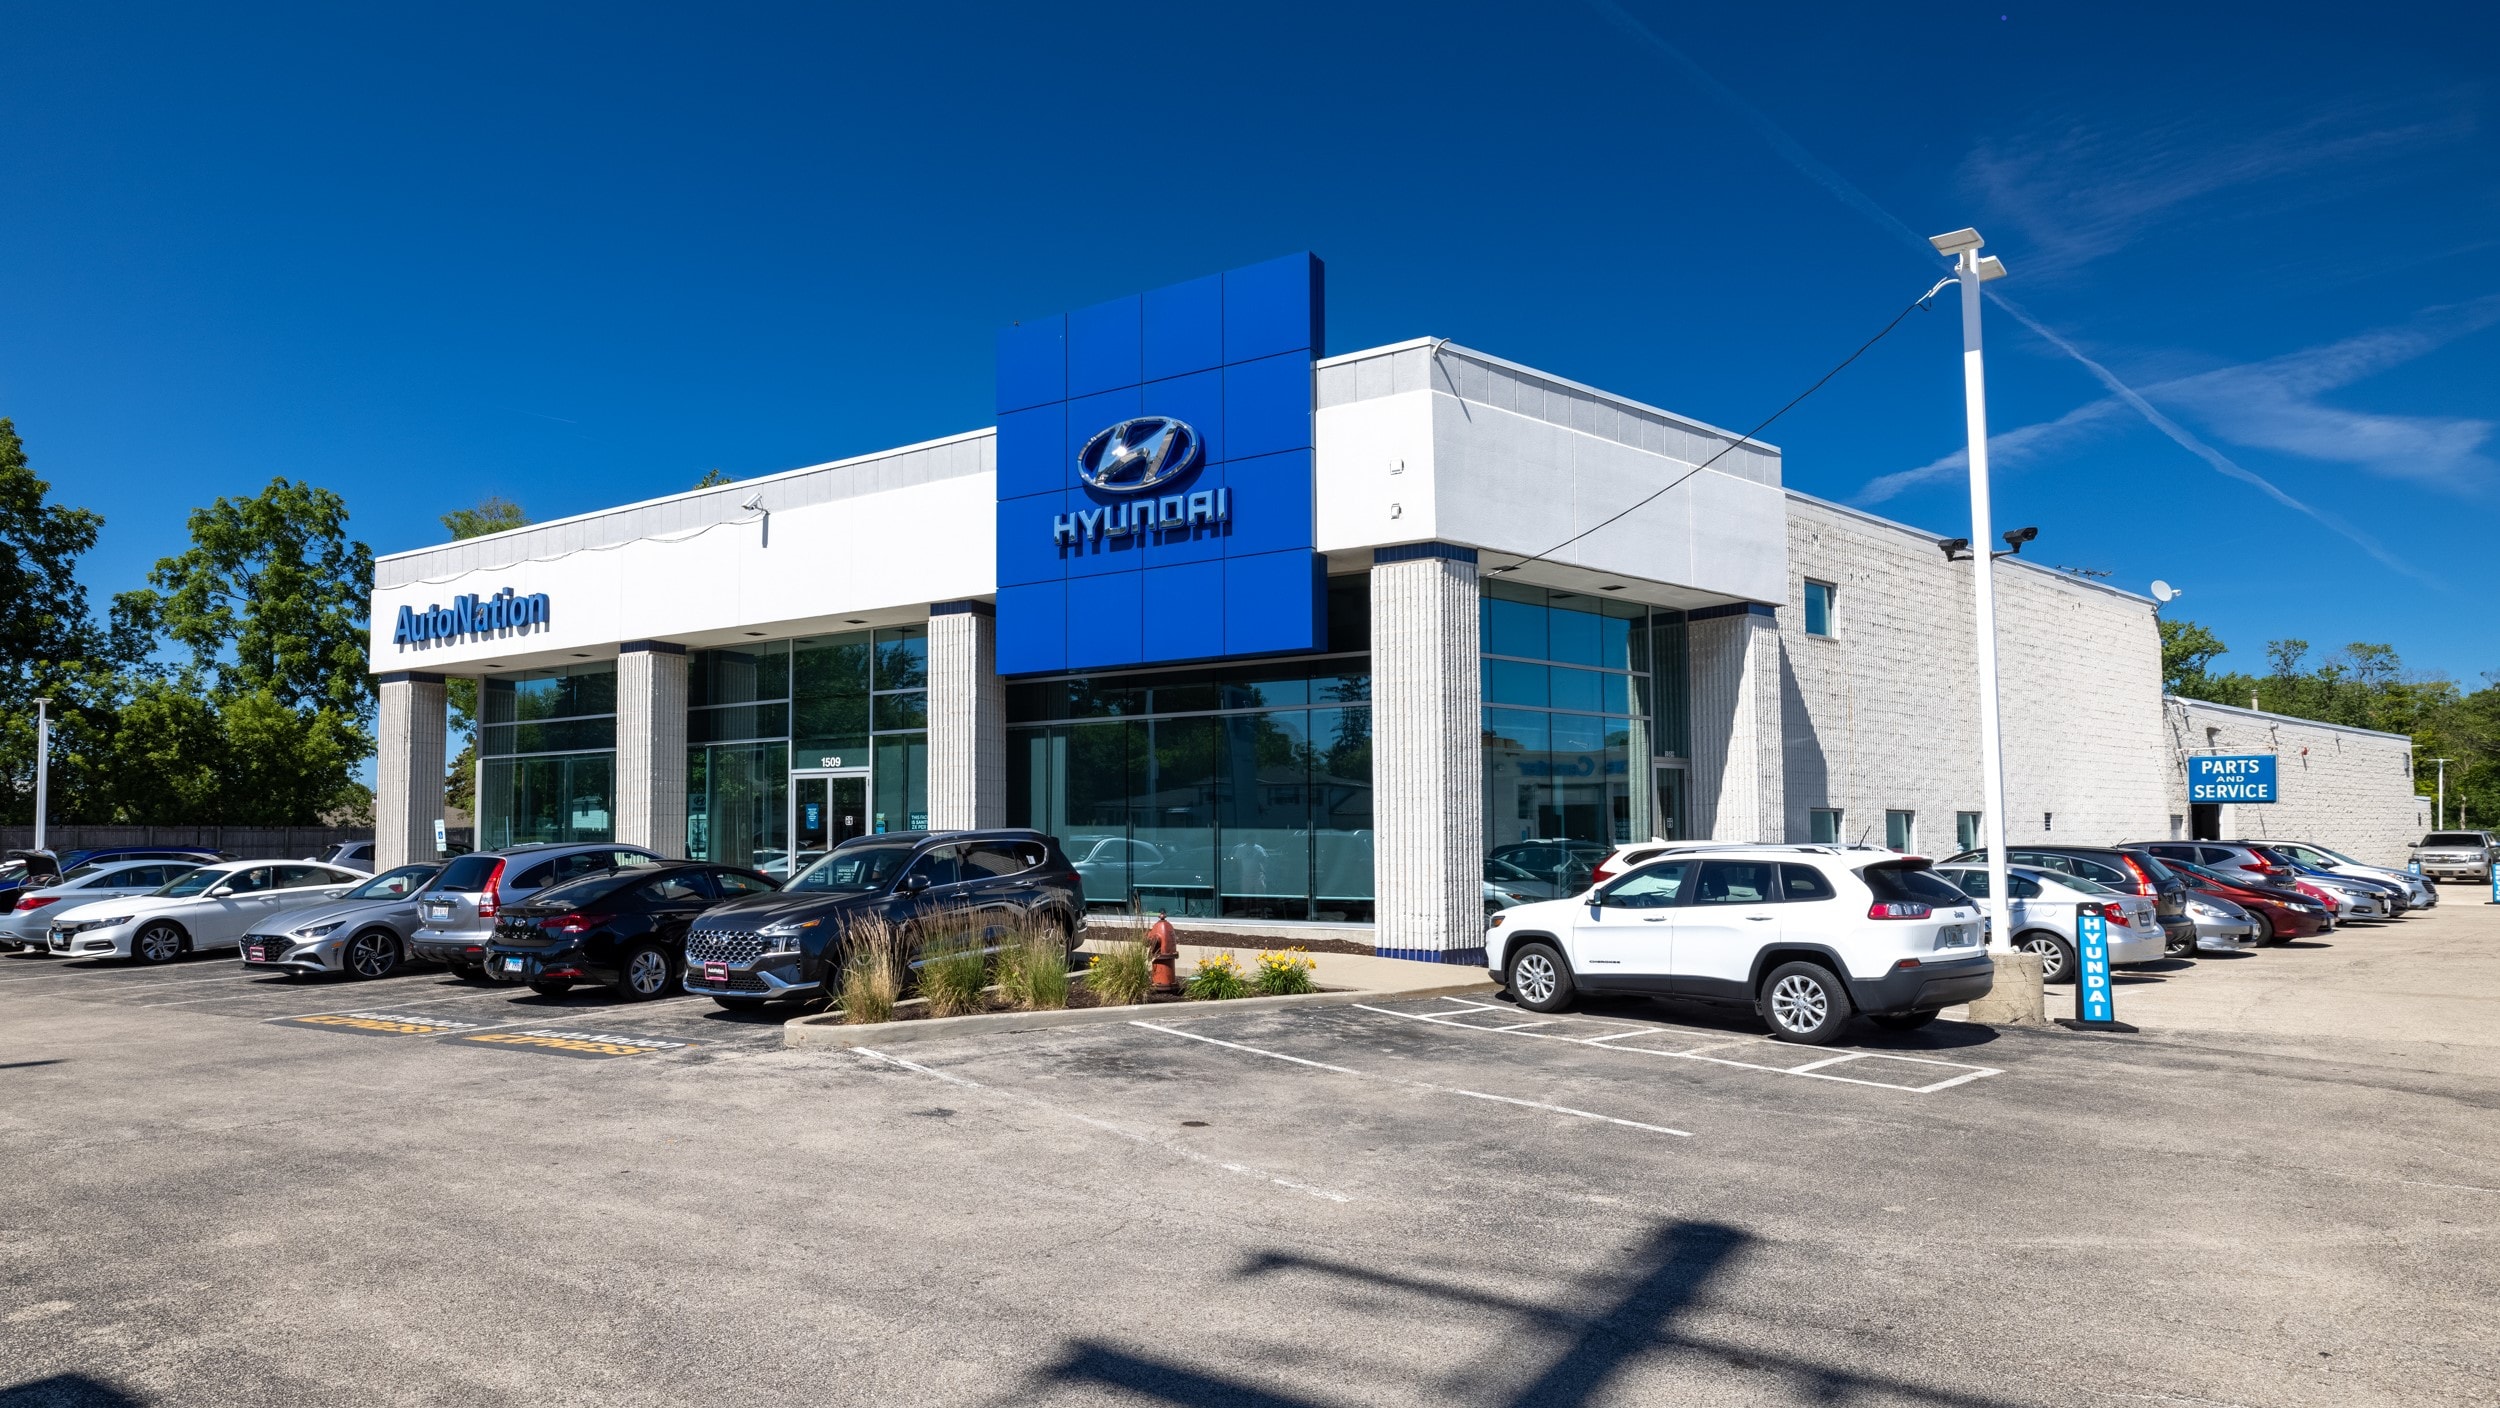 Exterior view of AutoNation Hyundai O'Hare